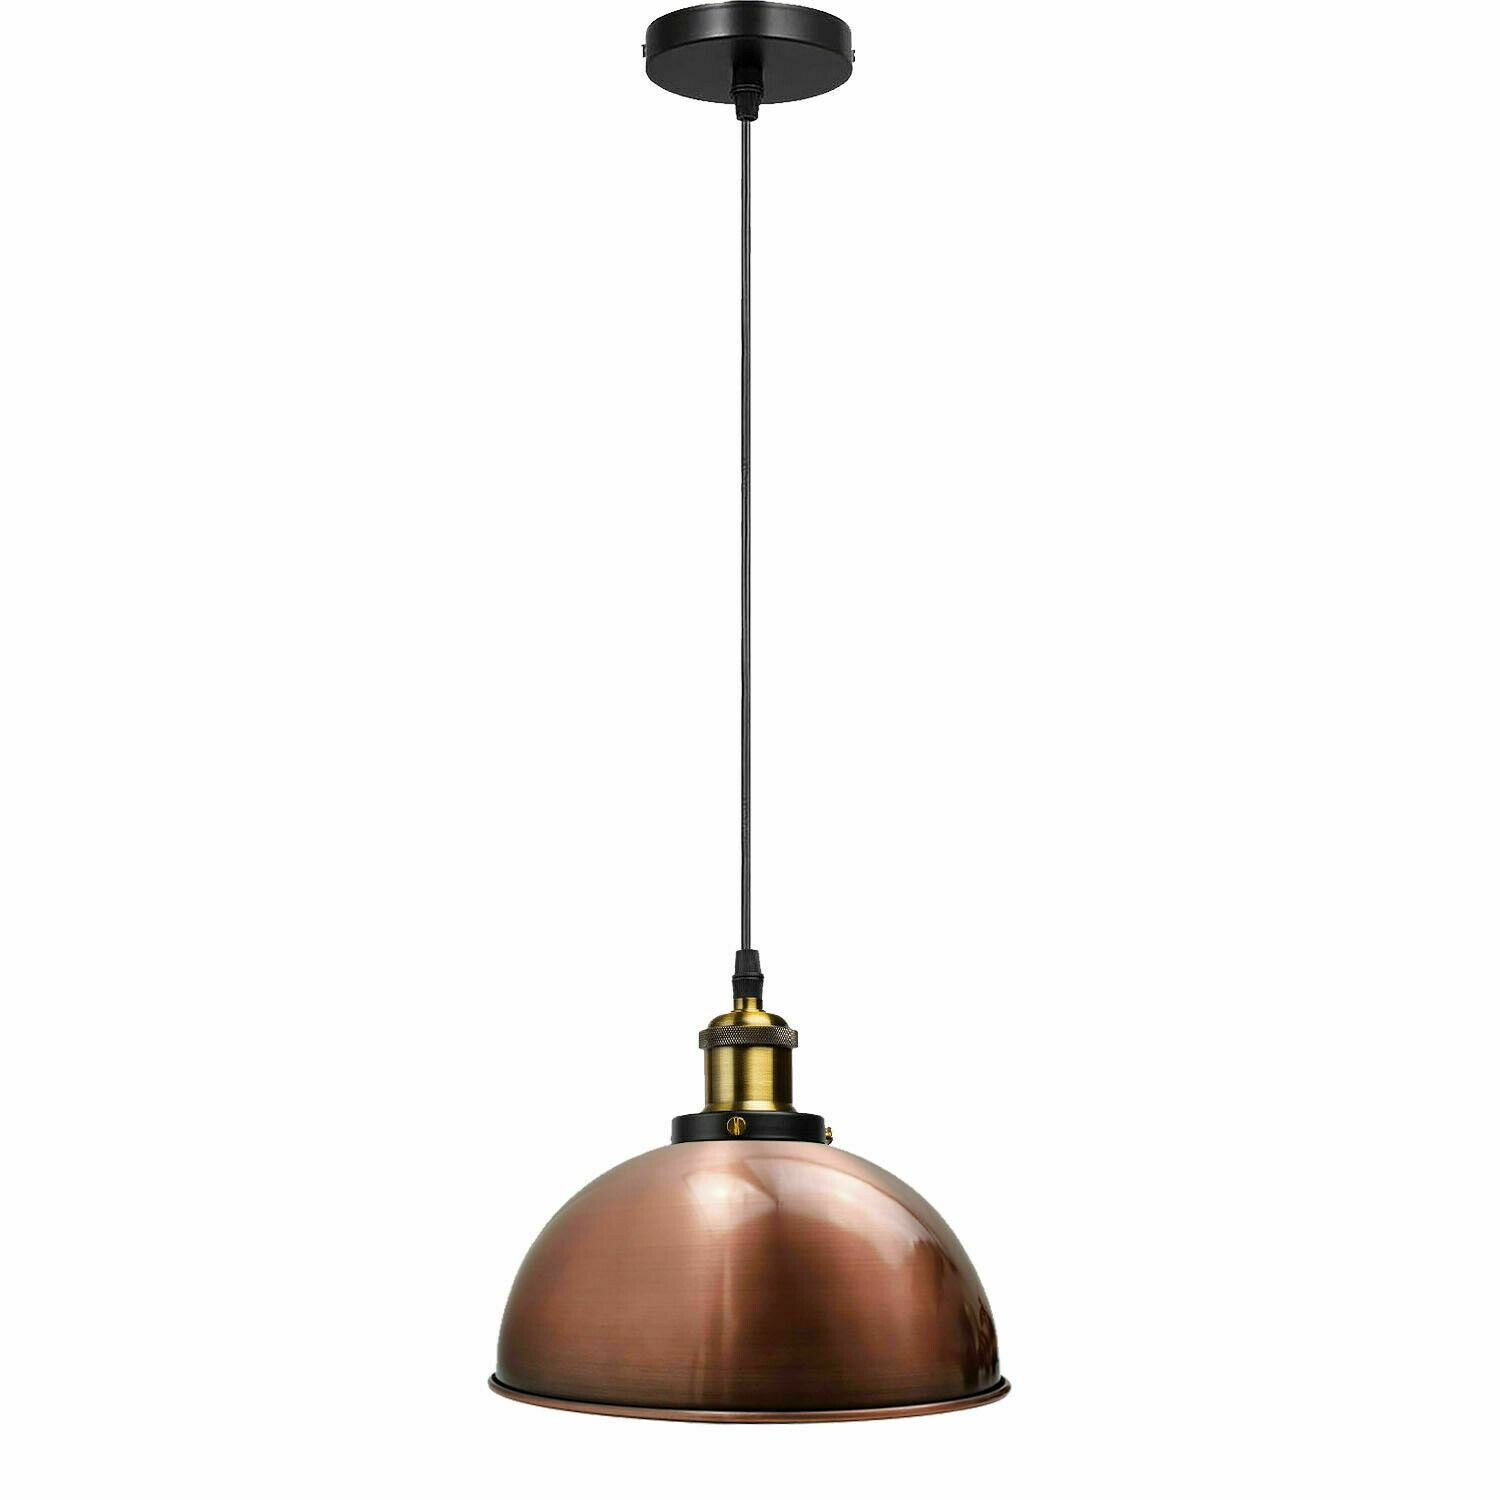 Vintage Modern Ceiling Pendant Light  Metal Dome Shade Hanging Indoor Light Fitting  With 95cm Adjustable Wire~1260 - LEDSone UK Ltd